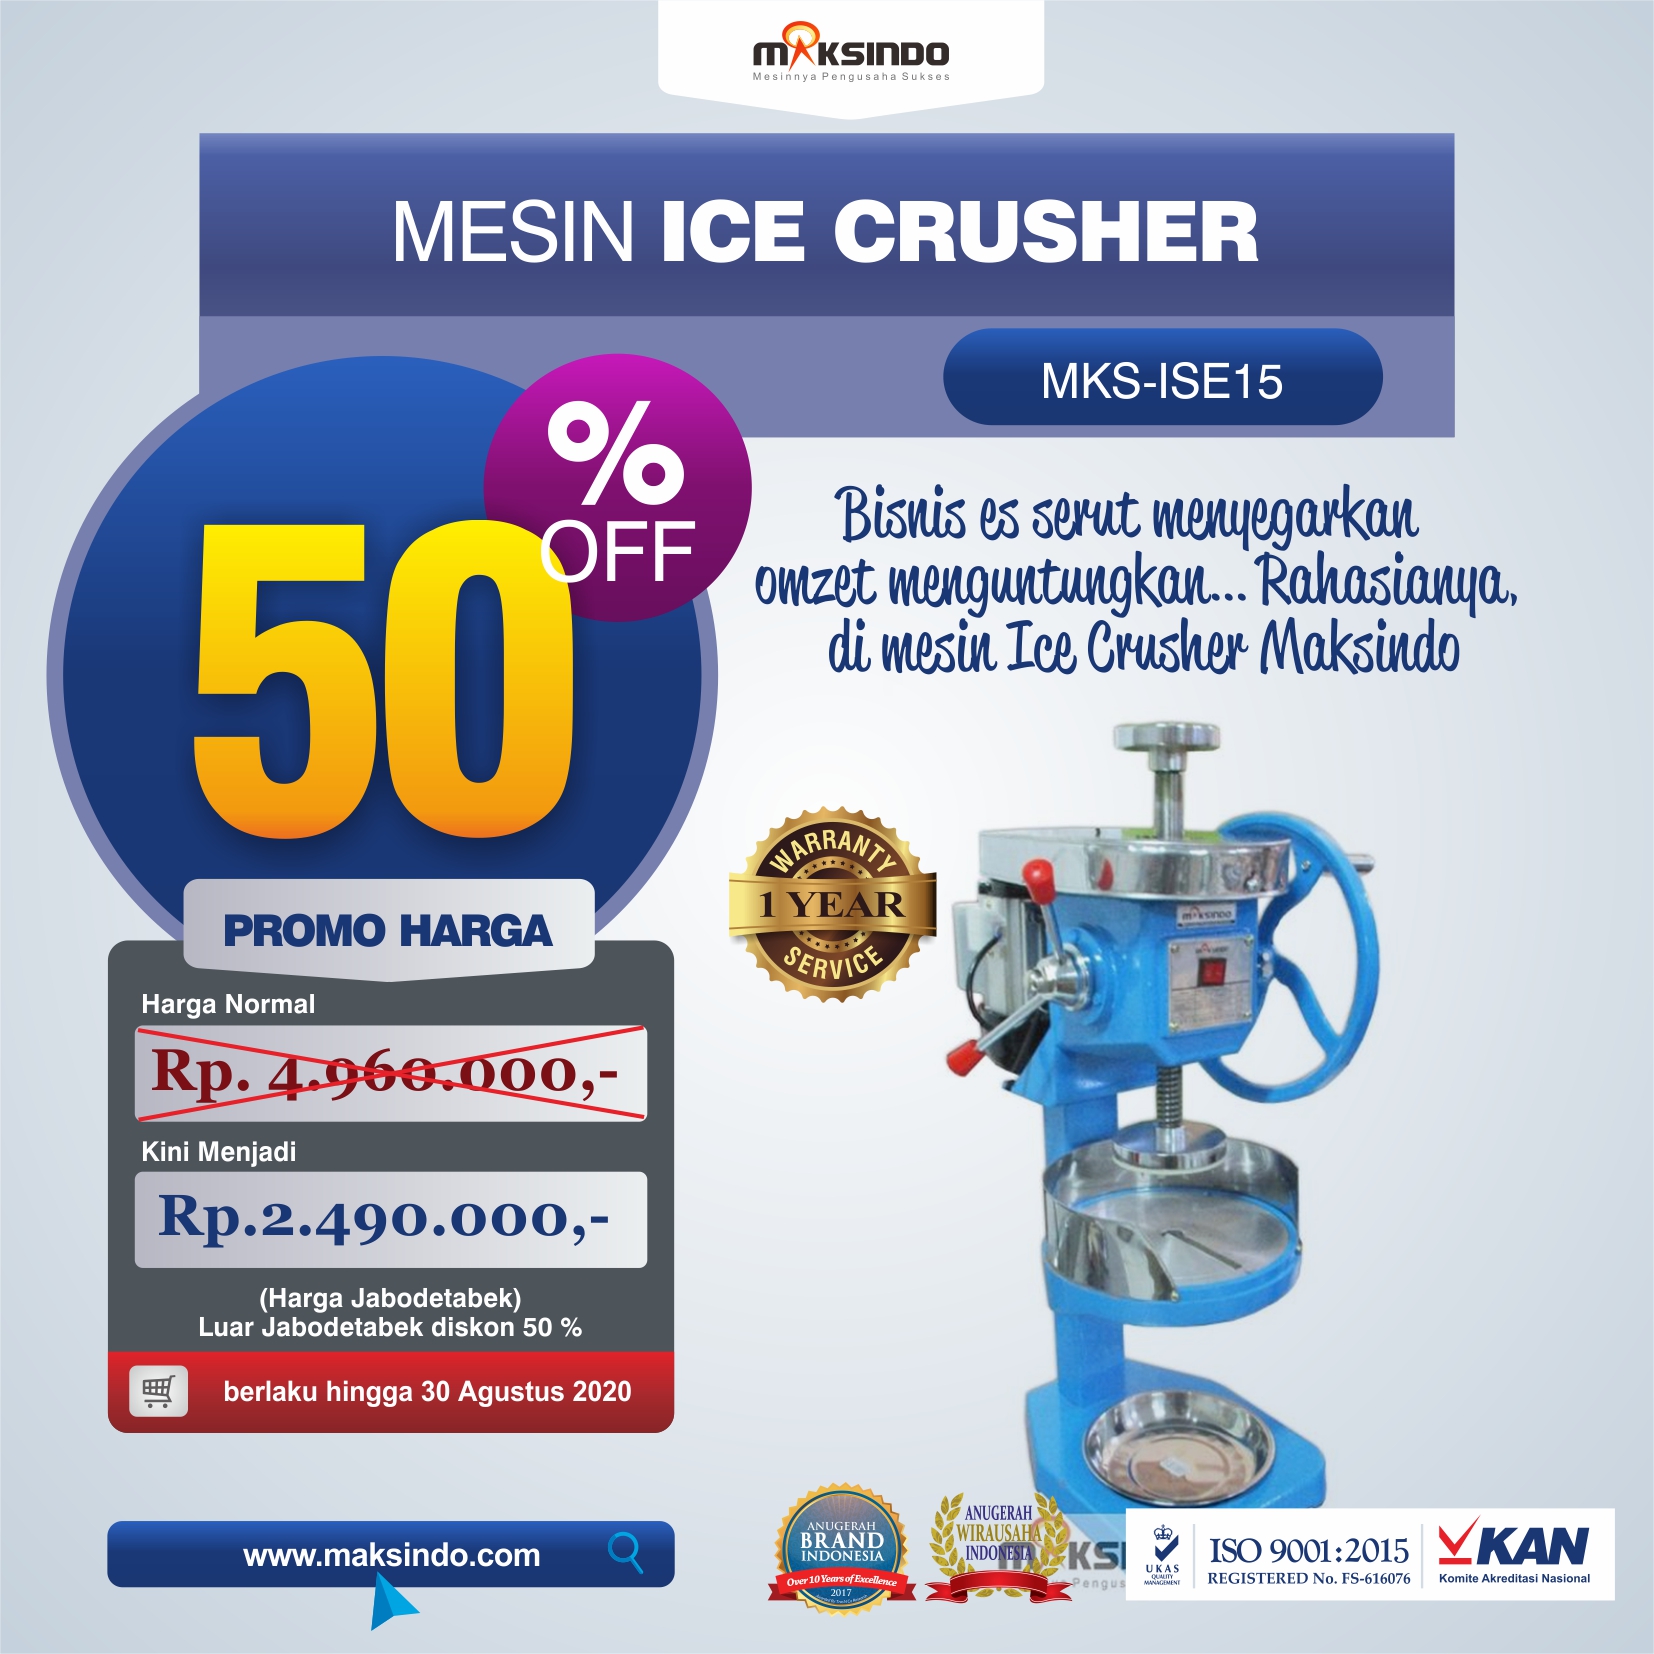 Jual Mesin Ice Crusher MKS-ISE15 di Pekanbaru